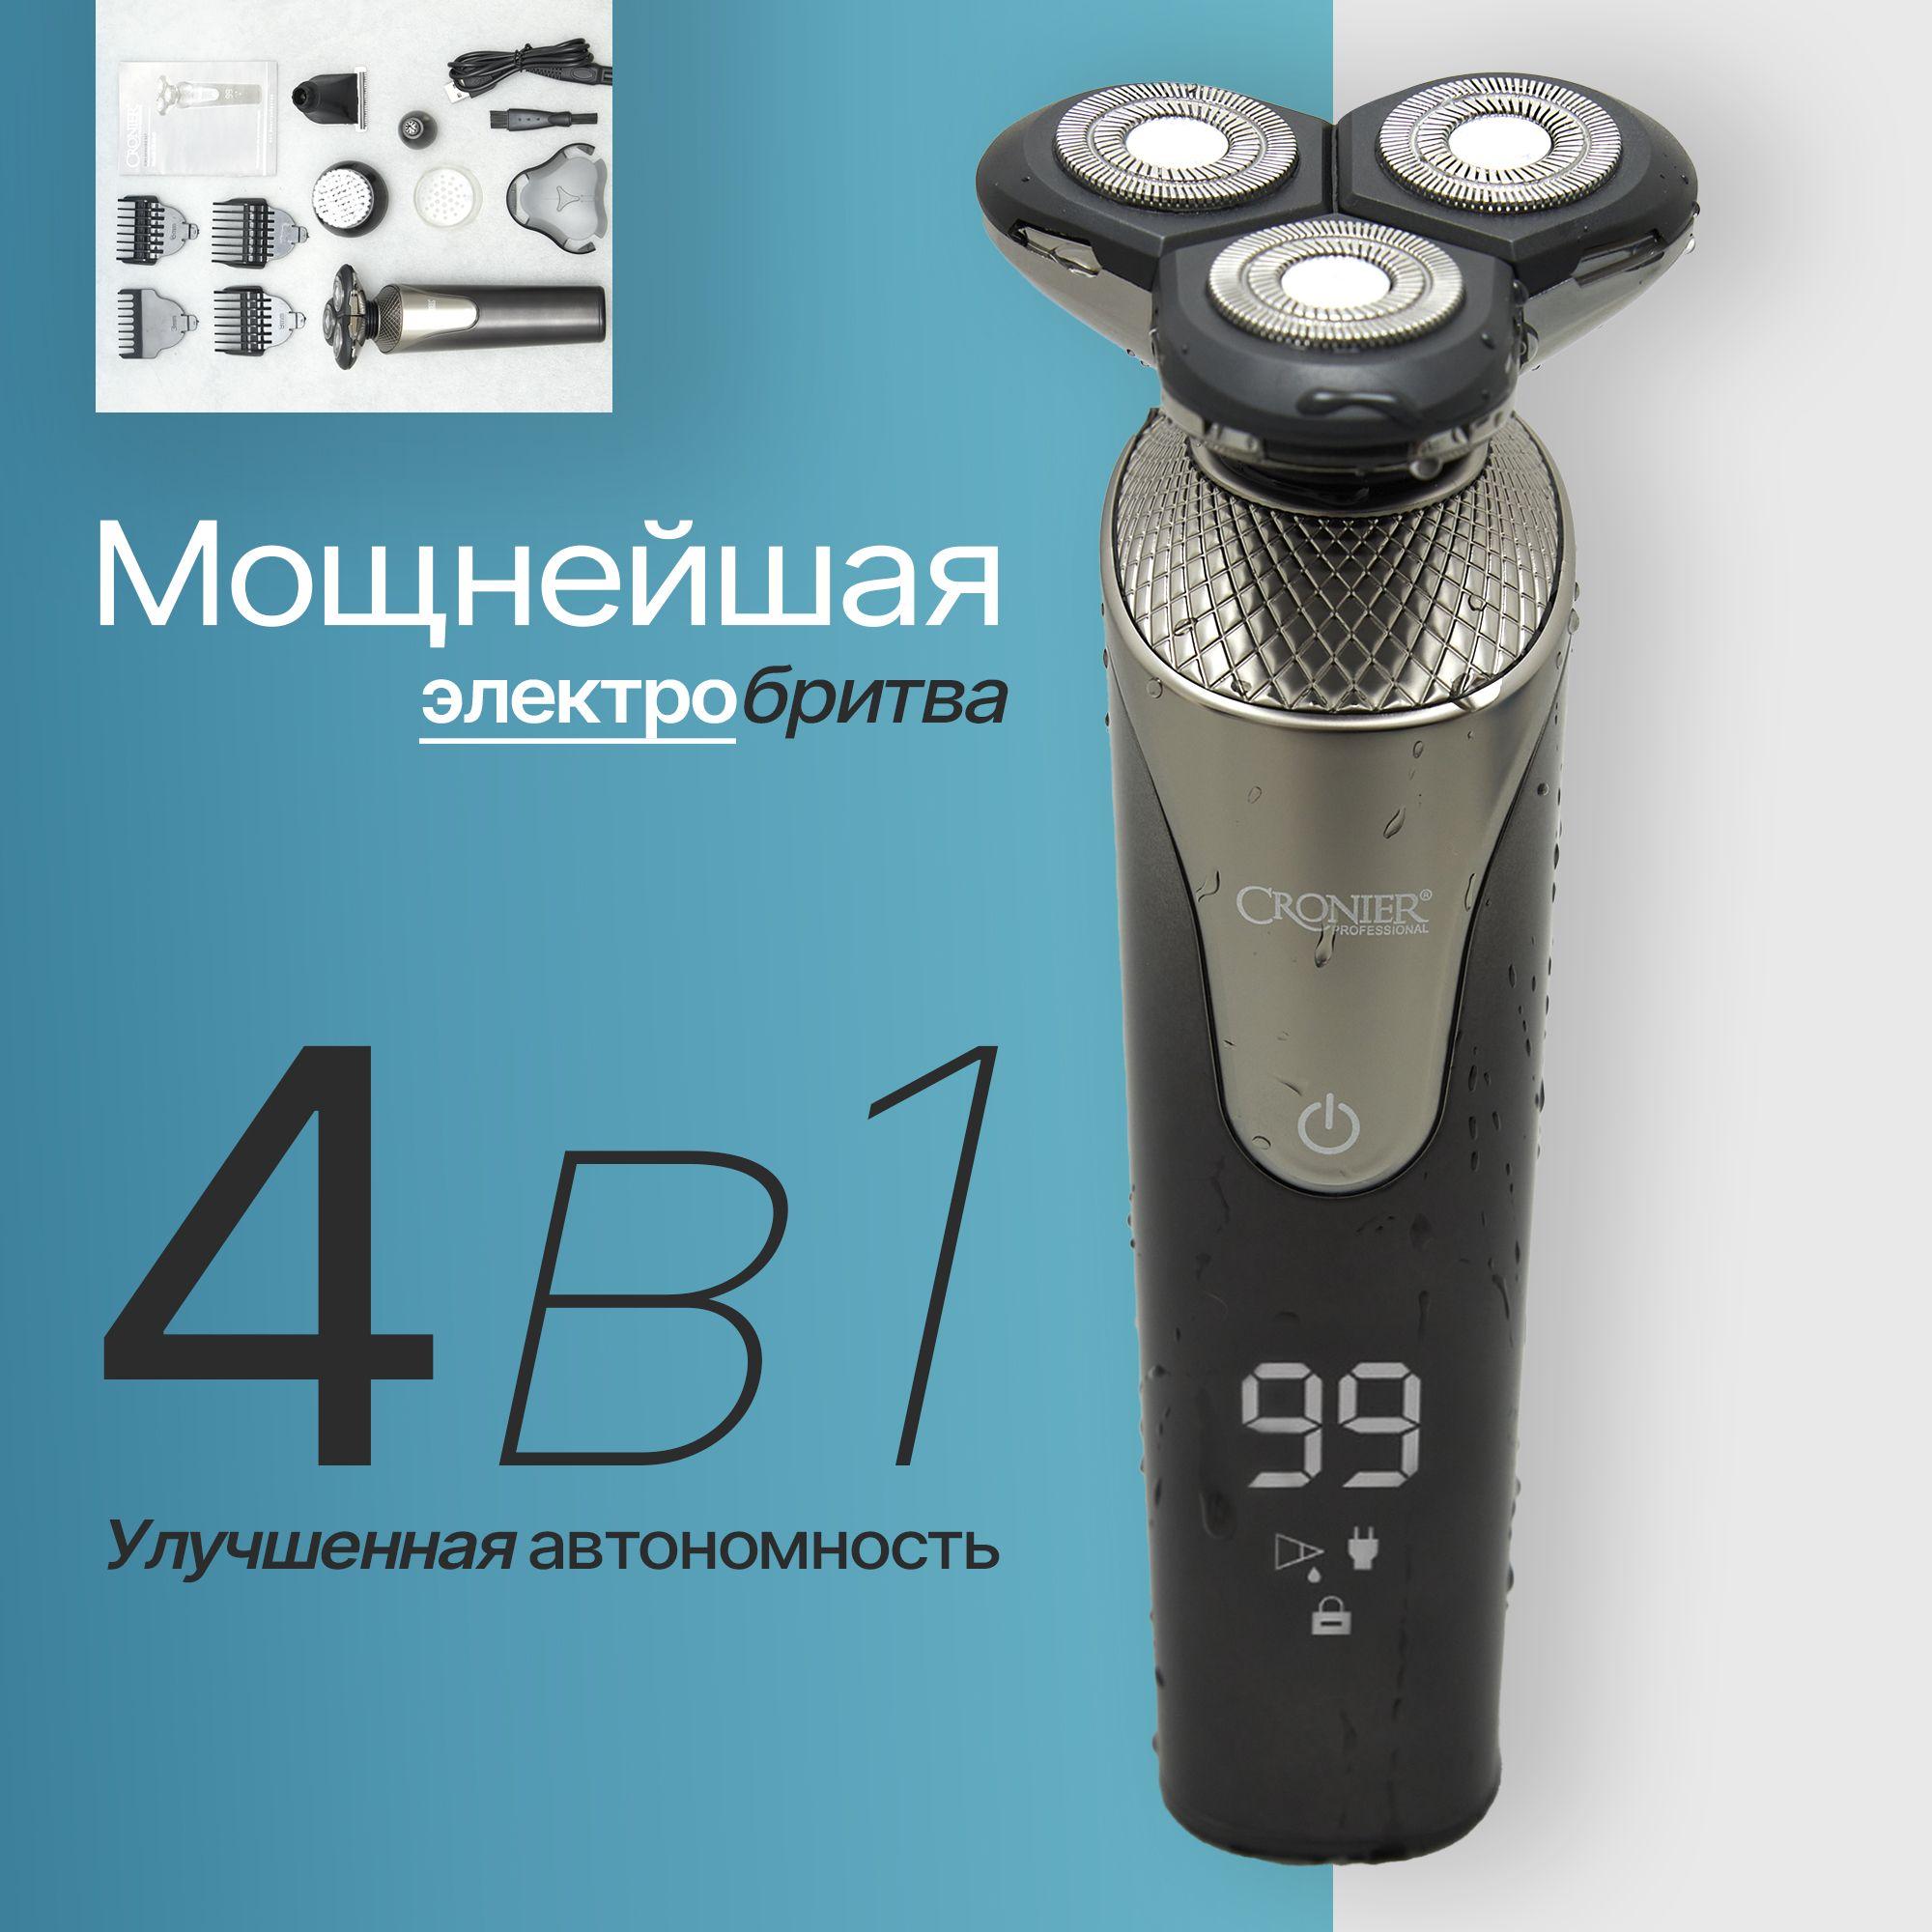 Akselent | электробритва мужская; бритва для мужчин электрическая; машинка для бритья